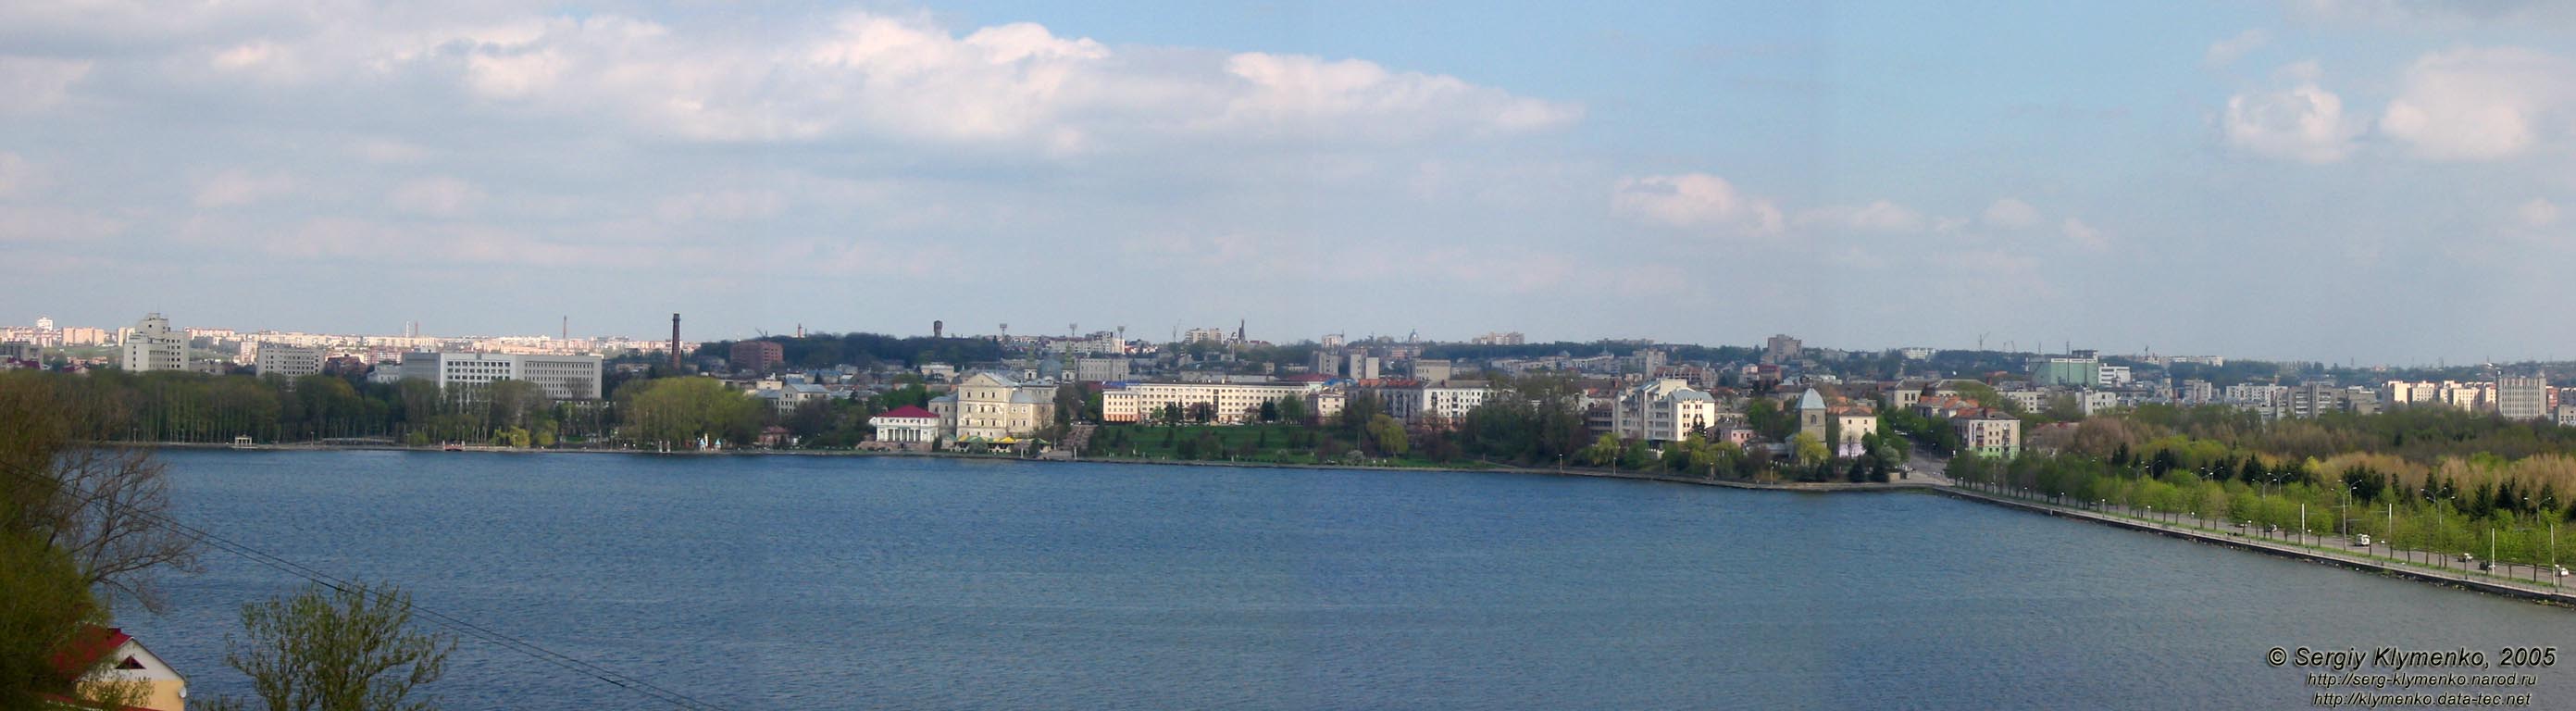 Тернополь. Панорама города и Тернопольского озера с высоты птичьего полета.